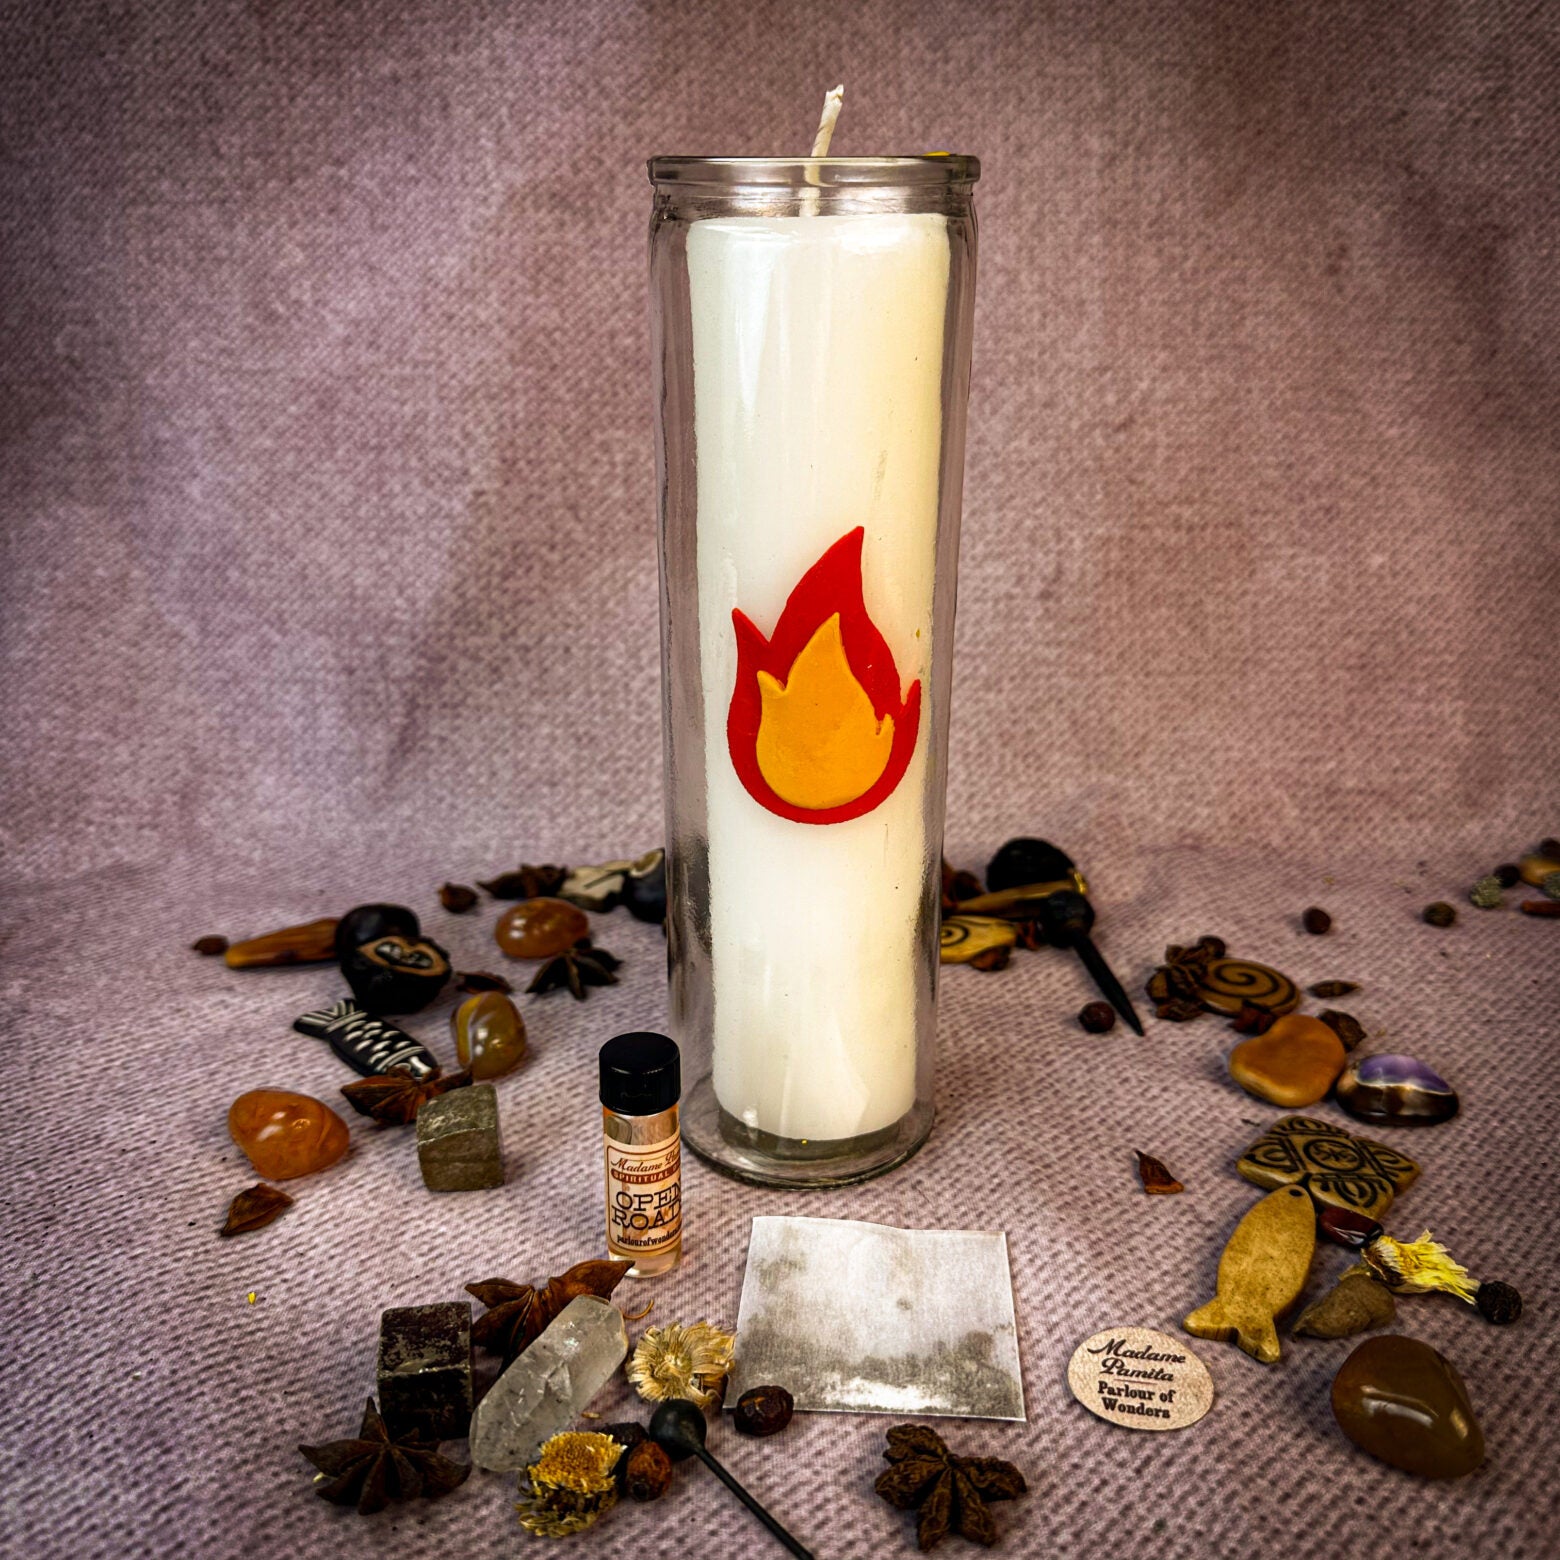 Imbolc Beeswax Sabbat Vigil Candle Kit